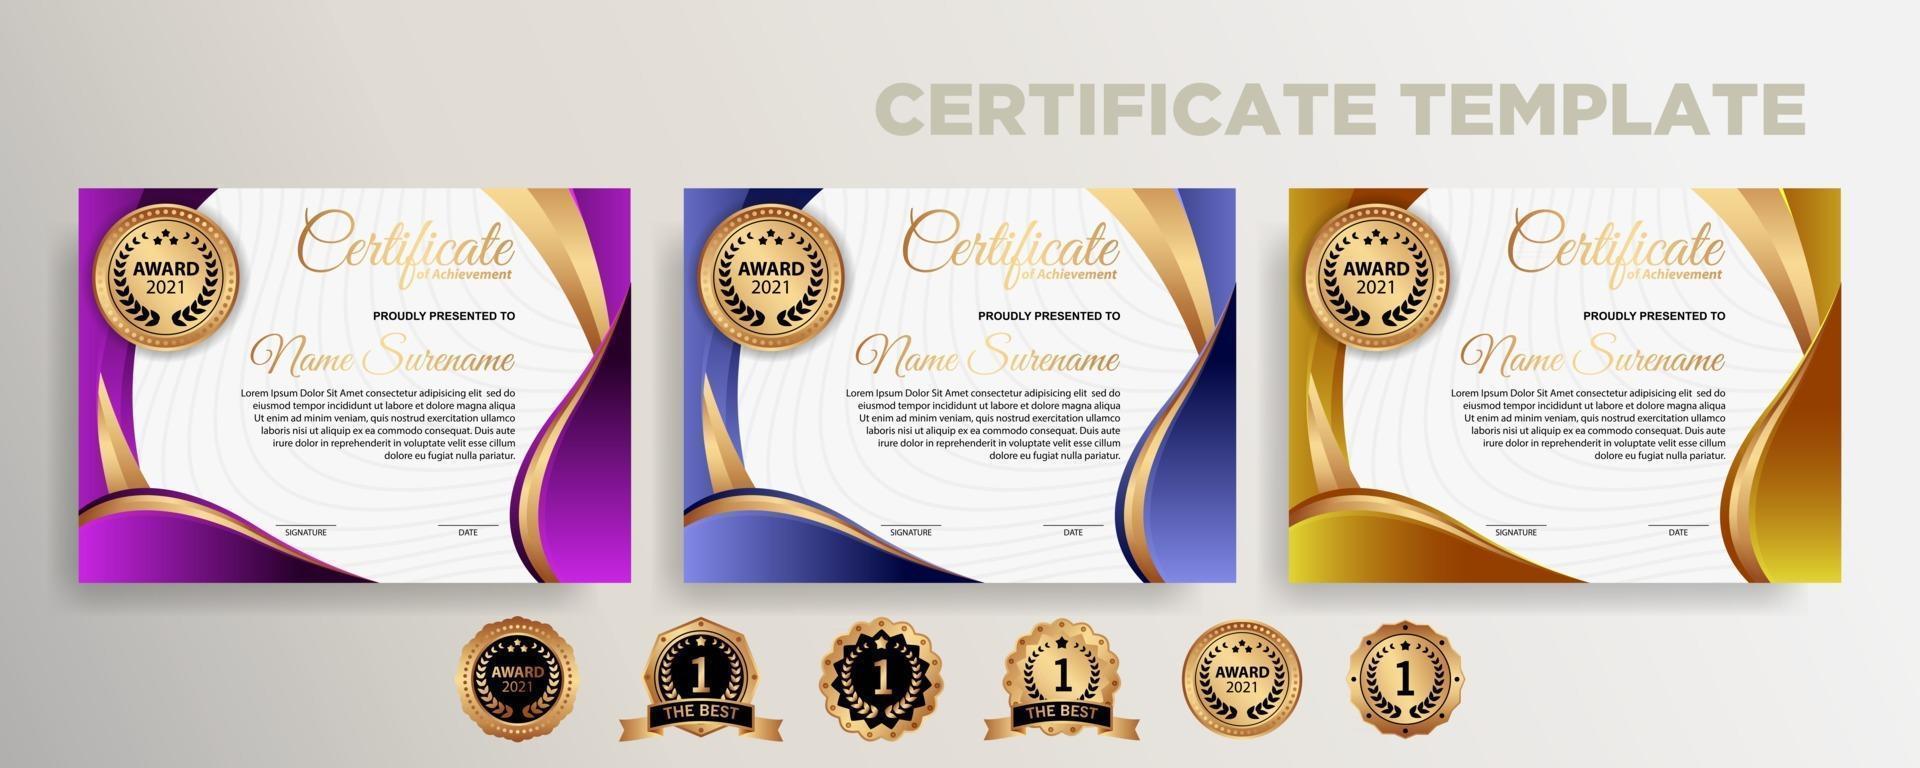 Premium diploma modern certificate template vector